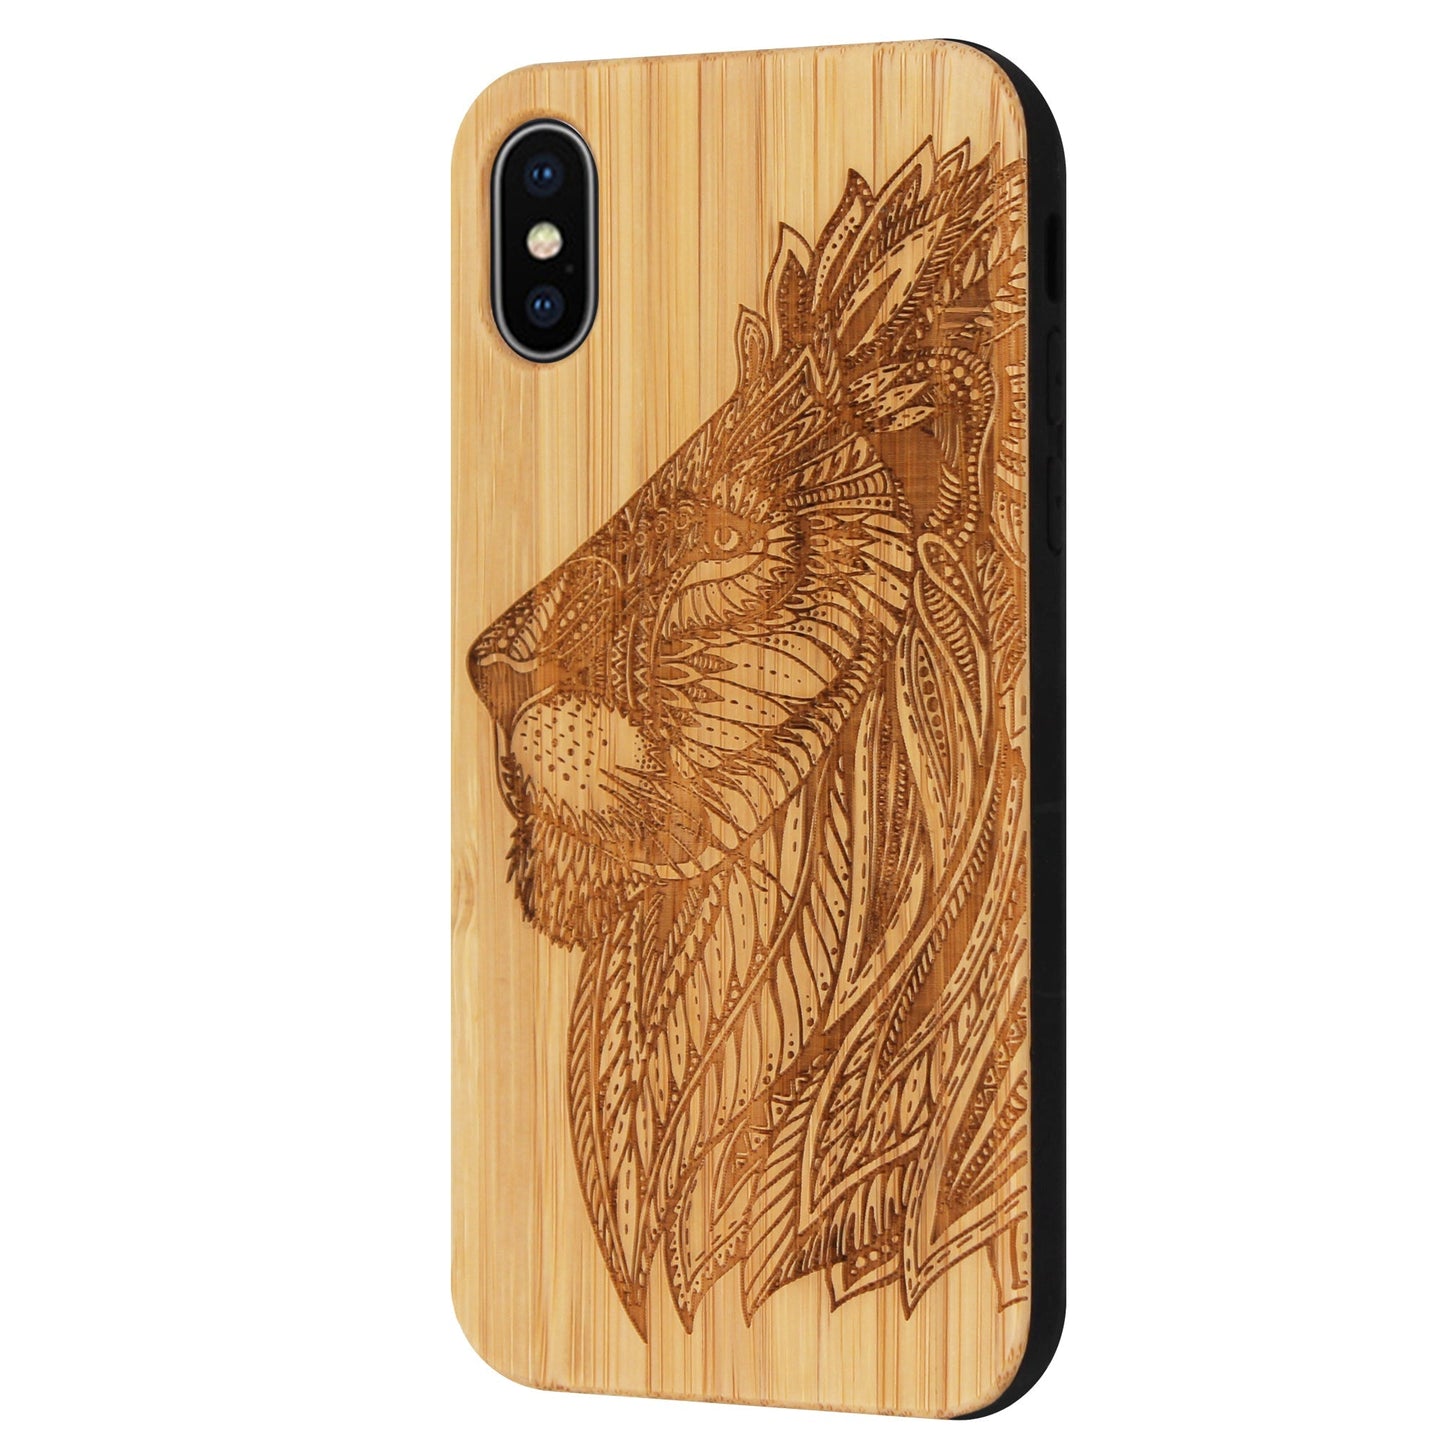 Coque Eden lion en bambou pour iPhone XS Max